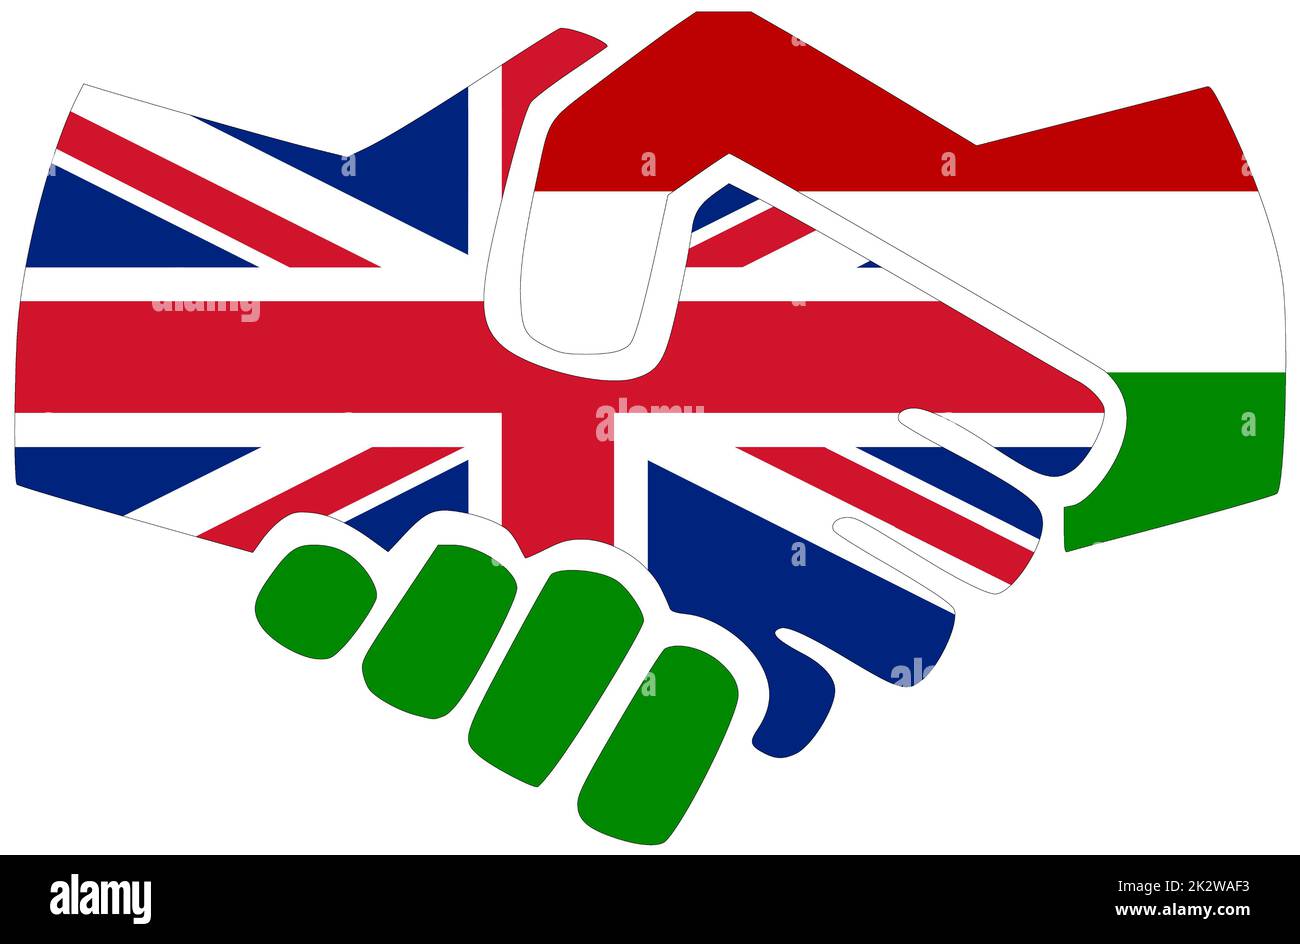 UK - Hungary : Handshake, symbol of agreement or friendship Stock Photo